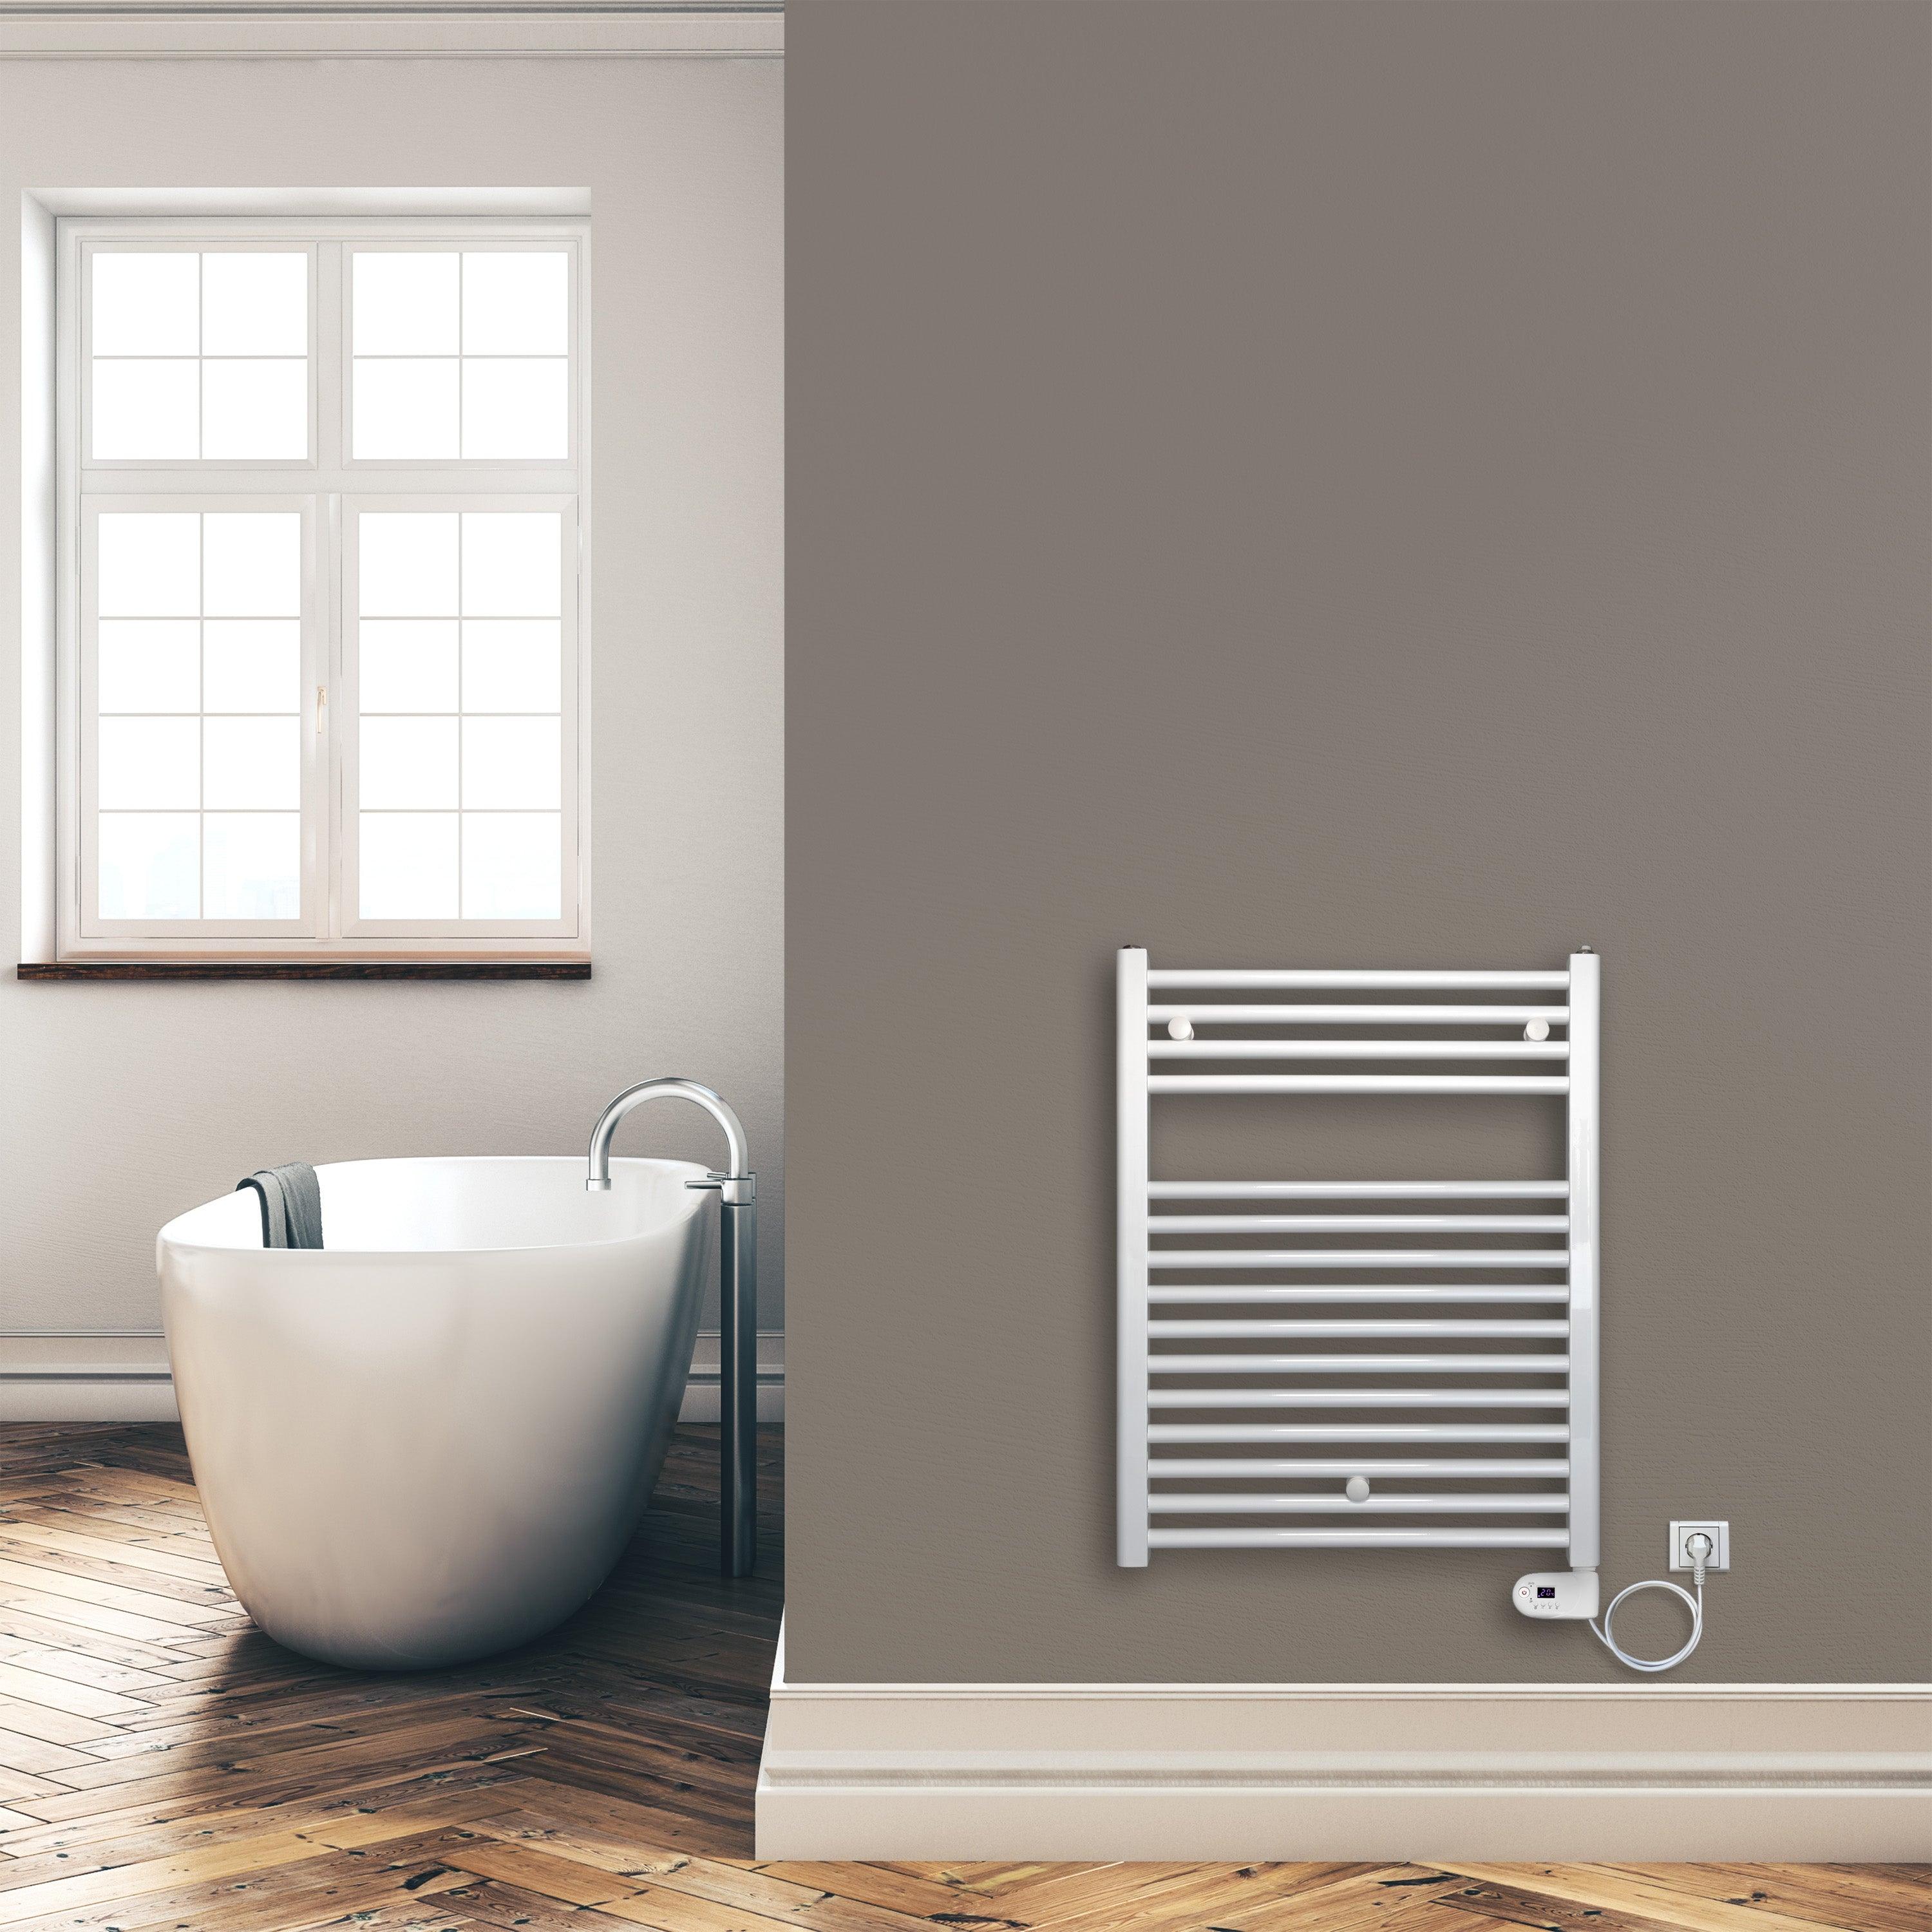 Badheizkörper 764 x 600 mm gerade mit digitalem Thermostat Elektroheizkörper Handtuchwärmer elektrischer Handtuchhalter weiß Montagebeispiel - heizkoerper.shop